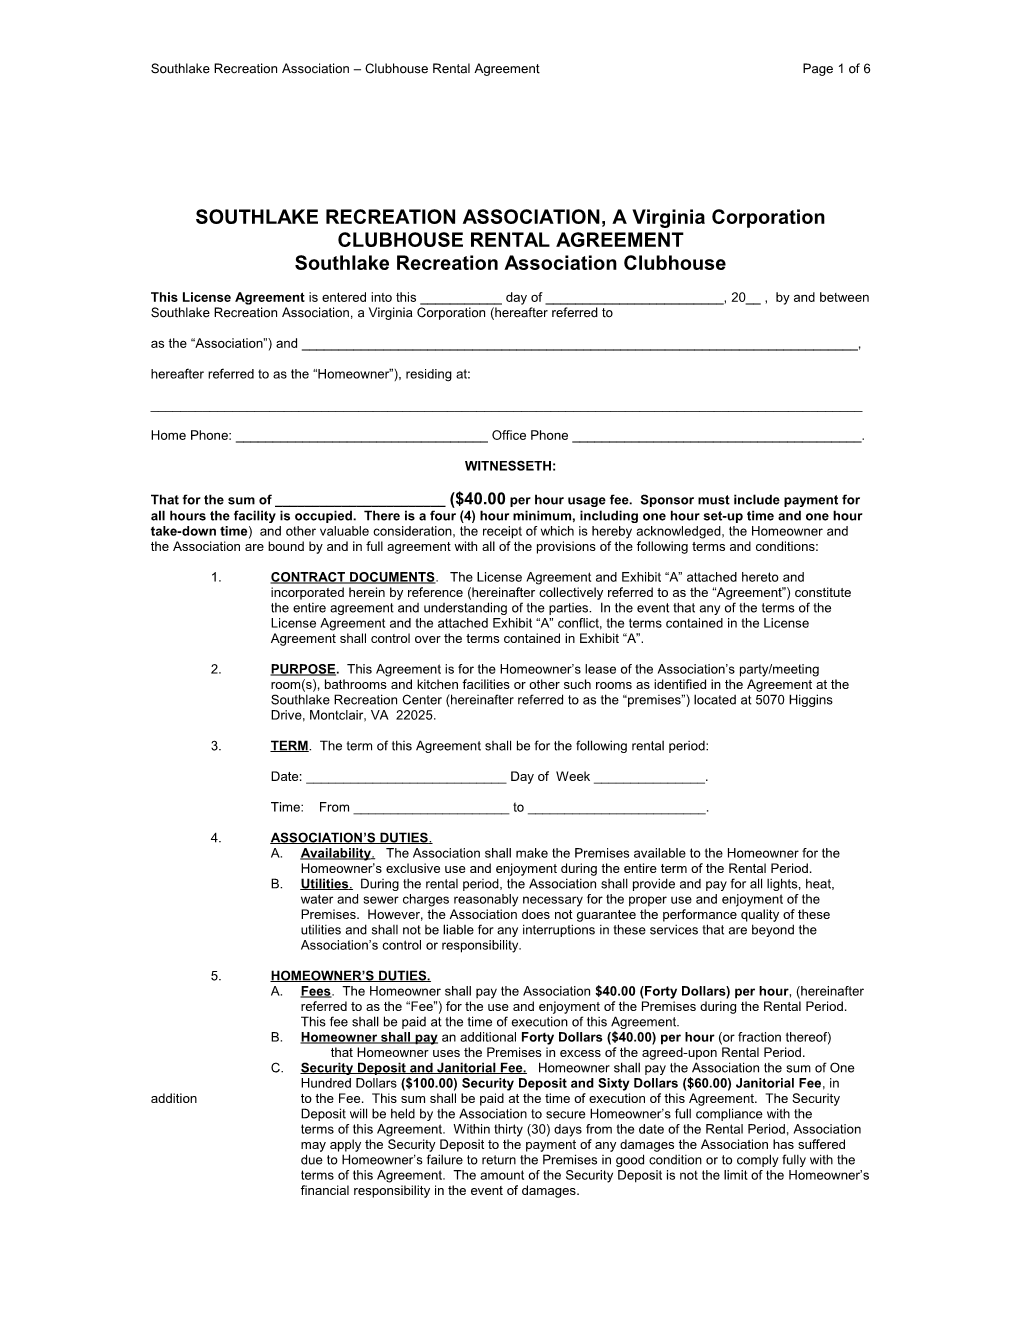 Southlake Recreation Association, a Virginia Corporation